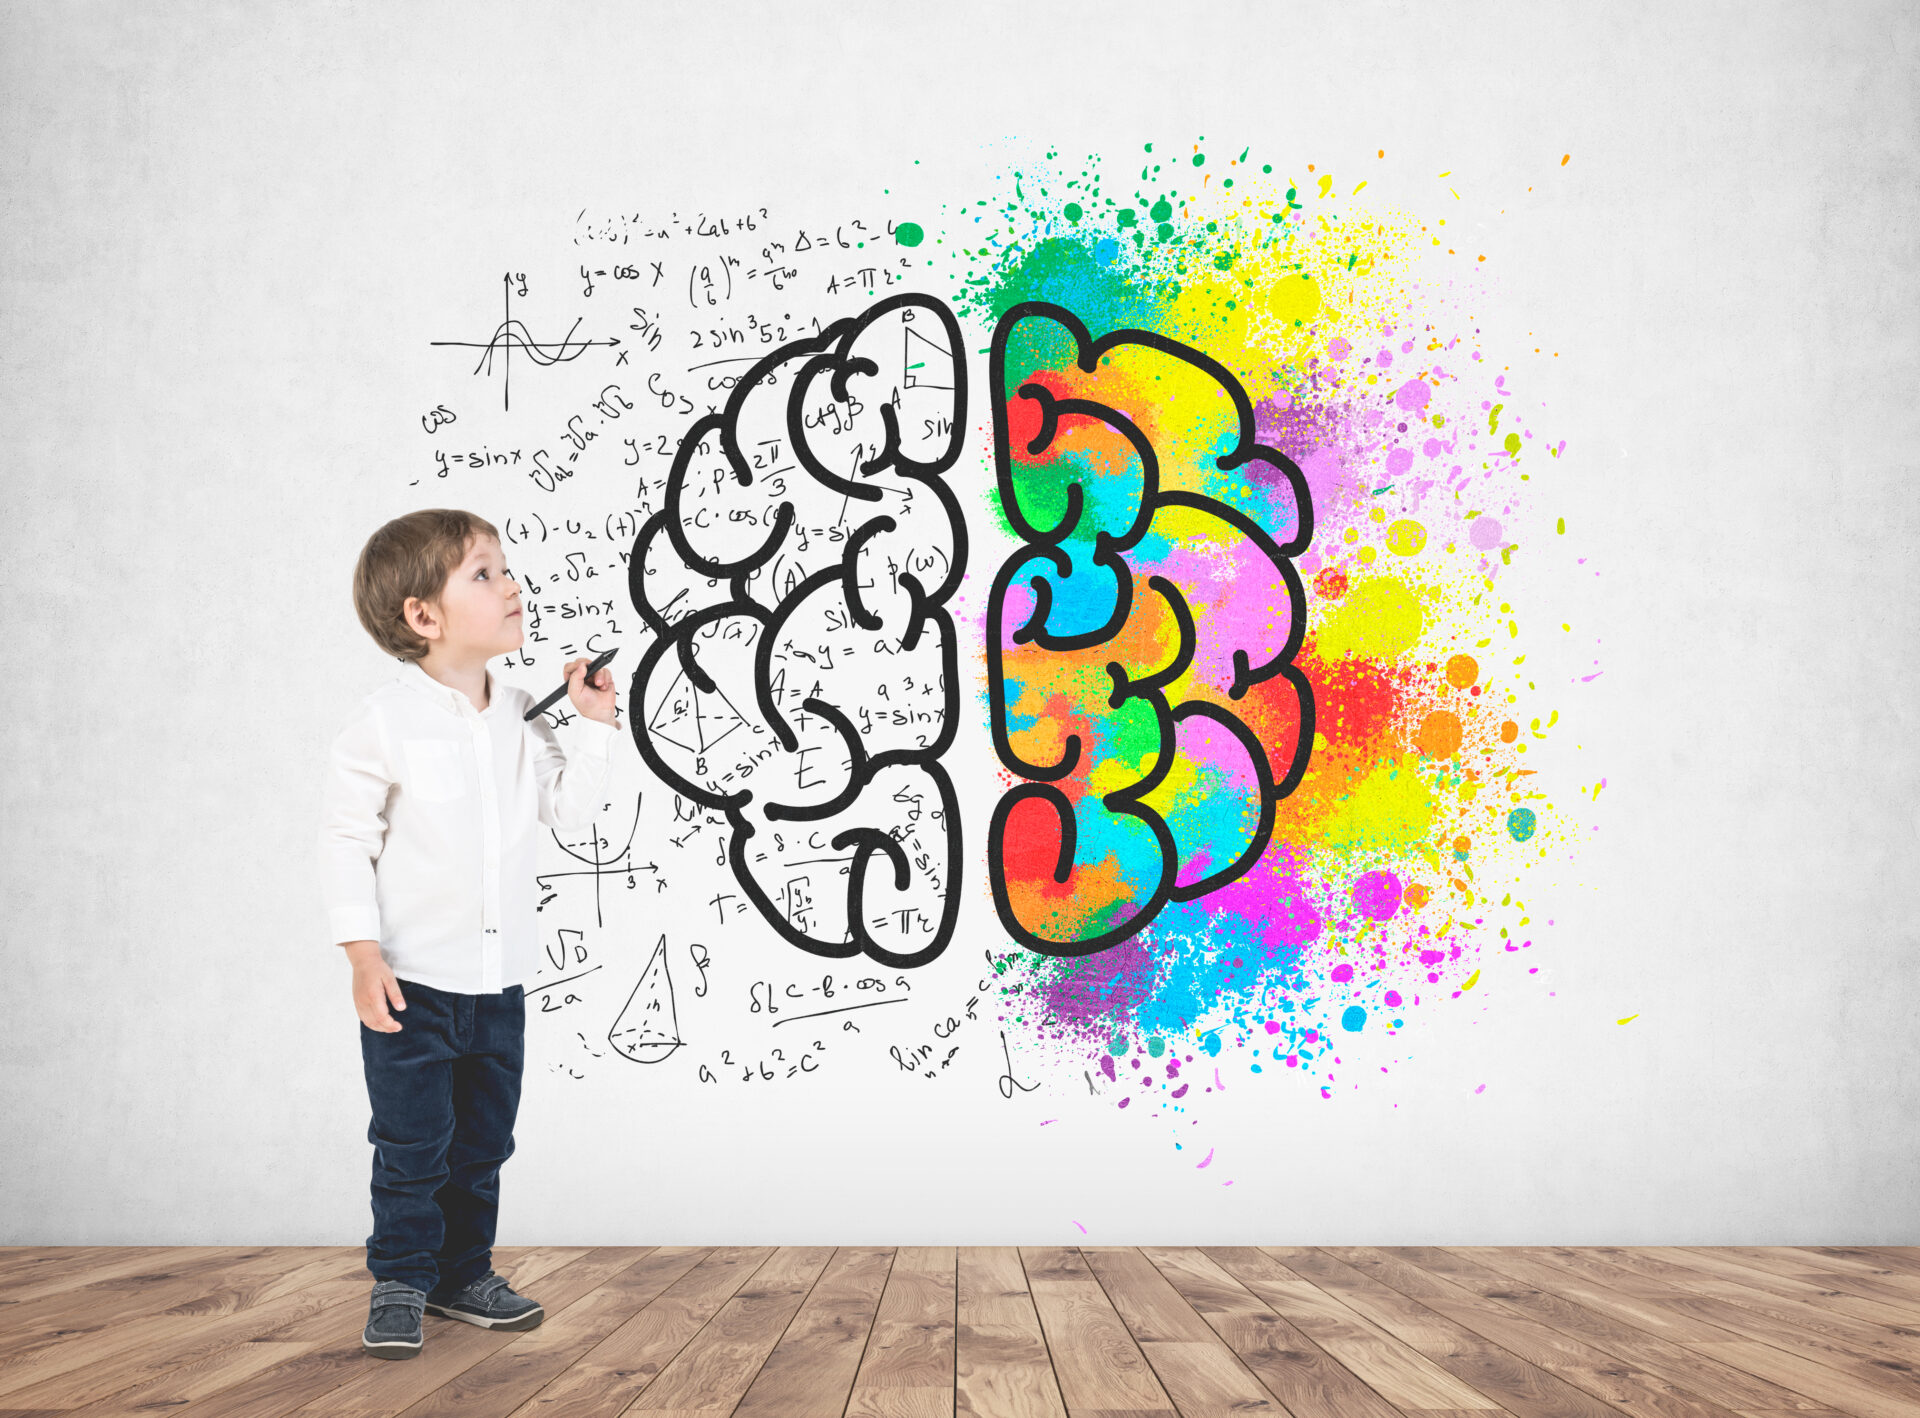 発達障害は幼少期から見られる脳の発達に関わる障害